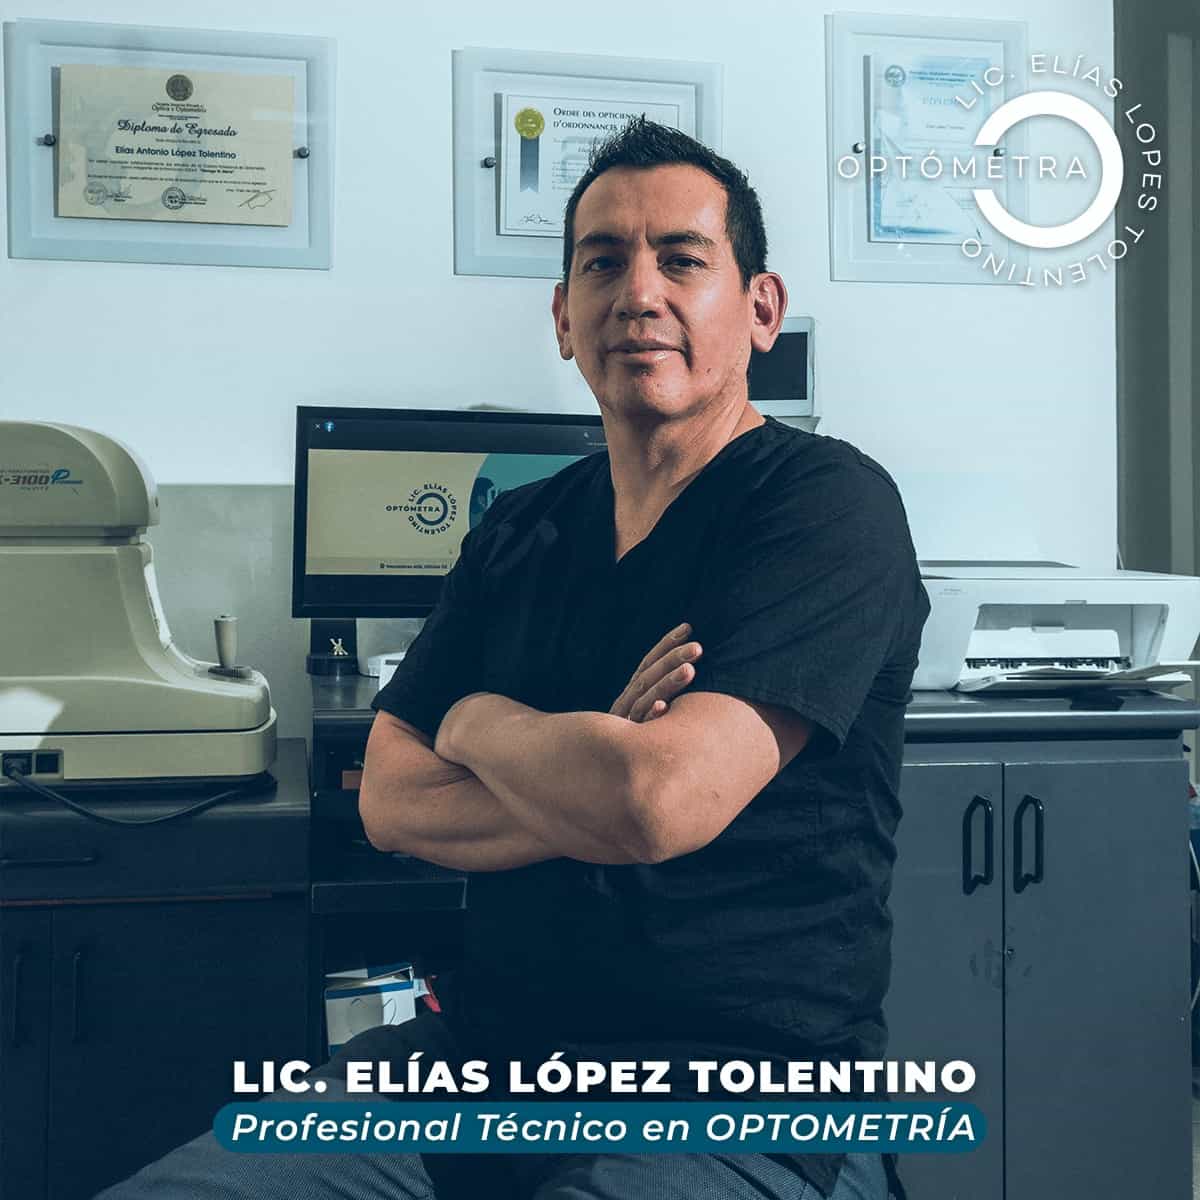 Lic. Elías López Tolentino